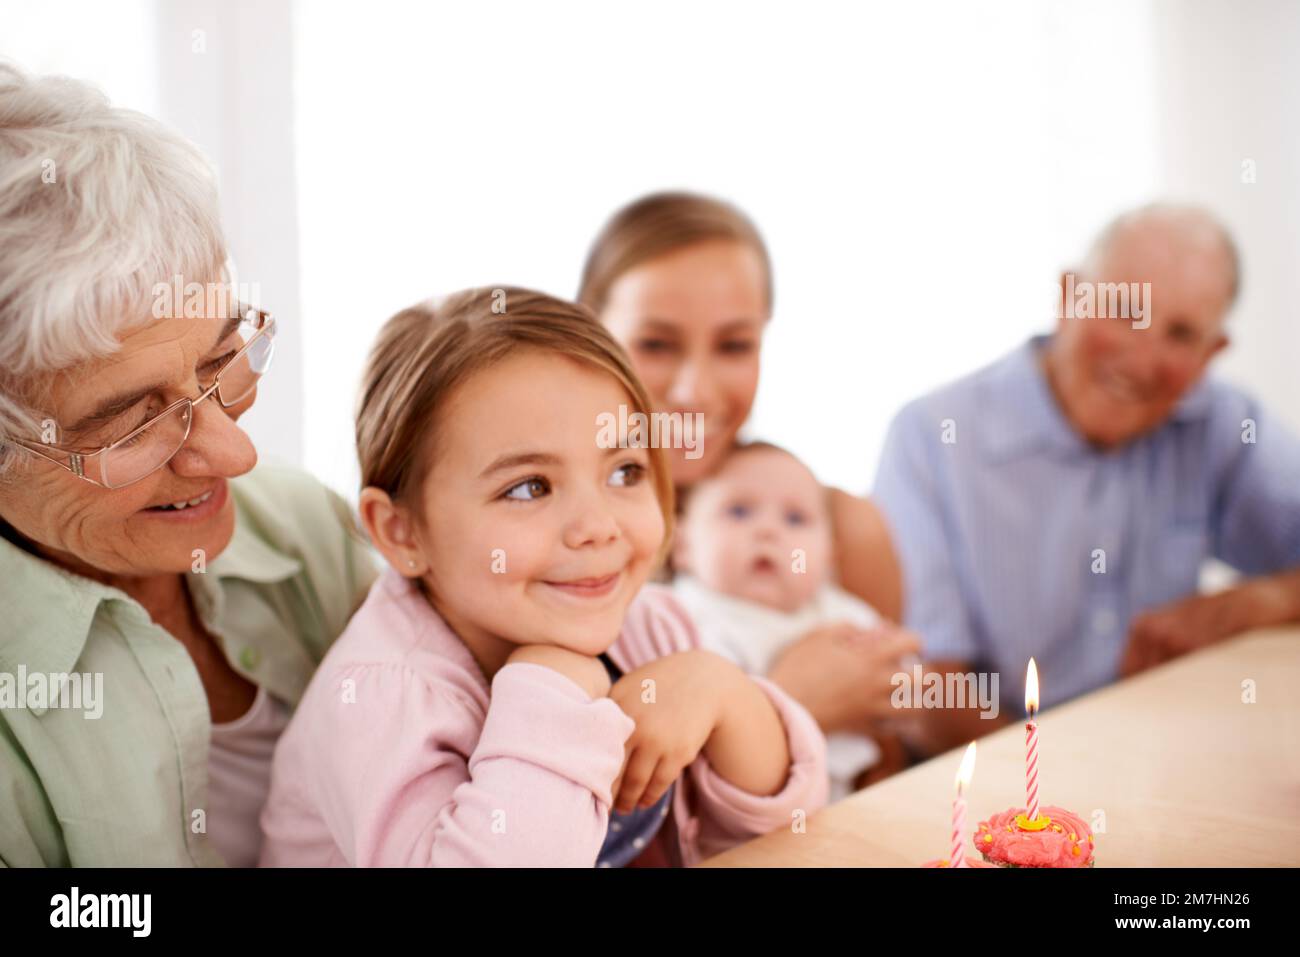 Je souhaite un poney. Portrait d'une famille heureuse de trois générations célébrant un anniversaire à la maison. Banque D'Images